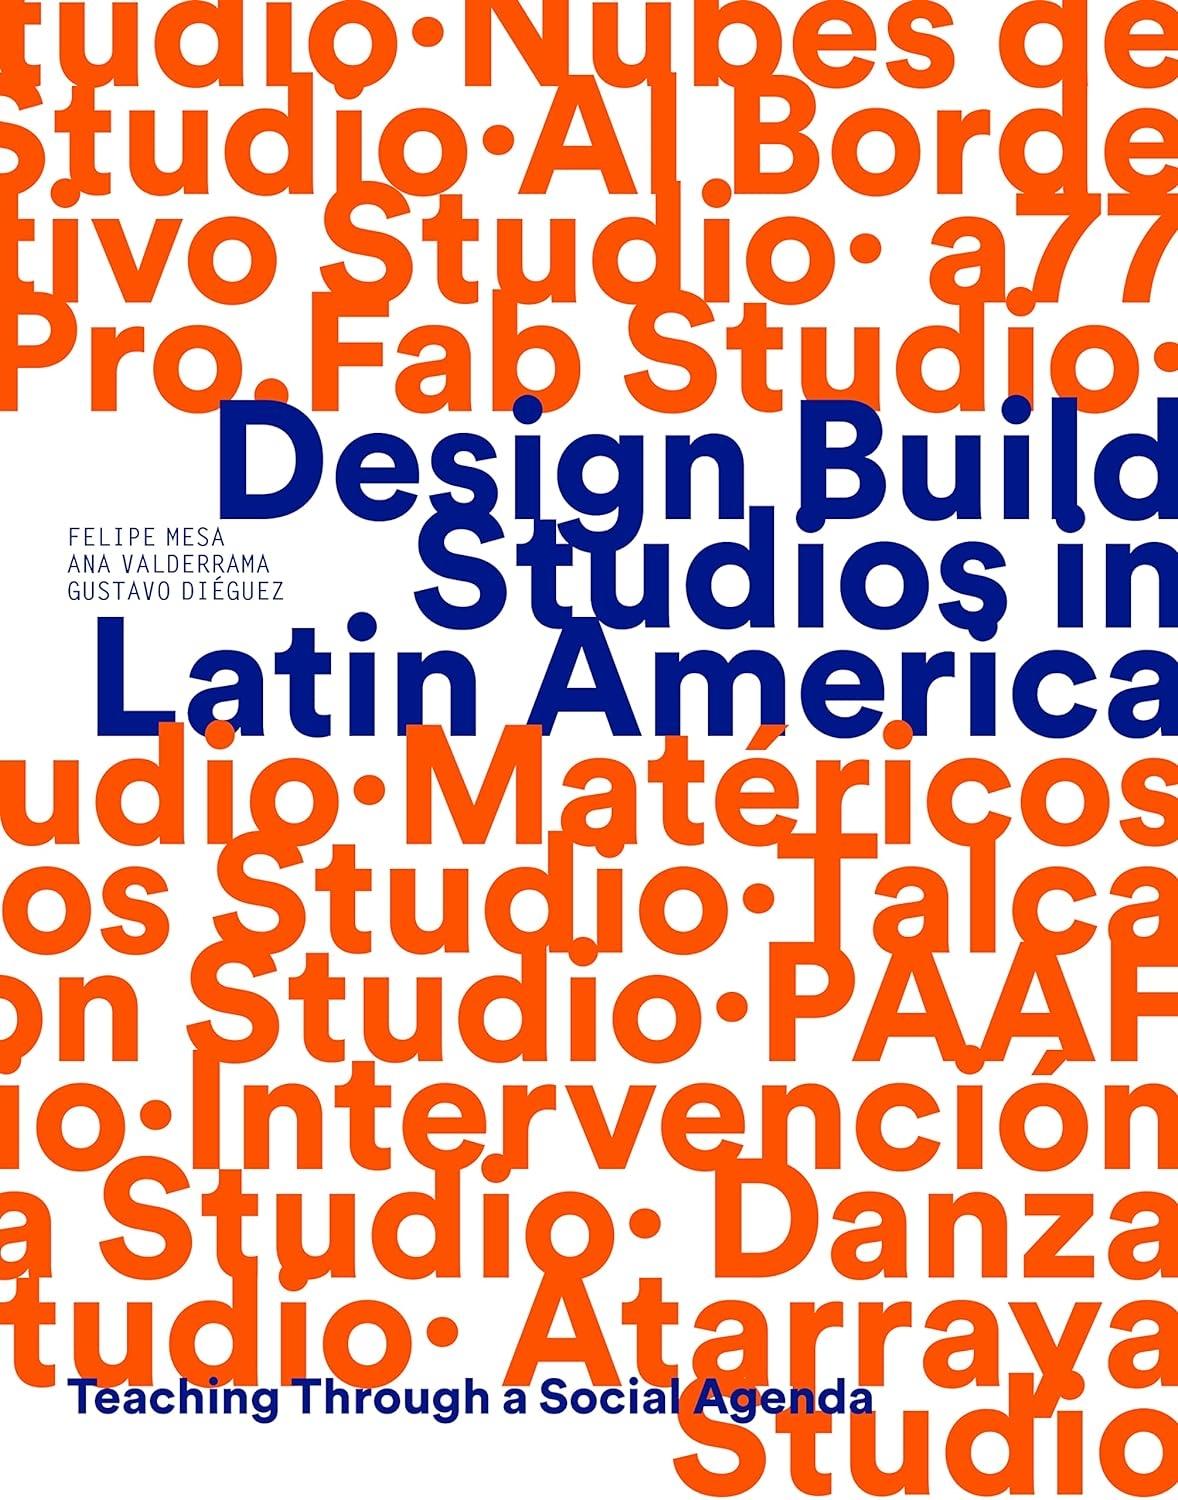 DESIGN BUILD STUDIOS IN LATIN AMERICA